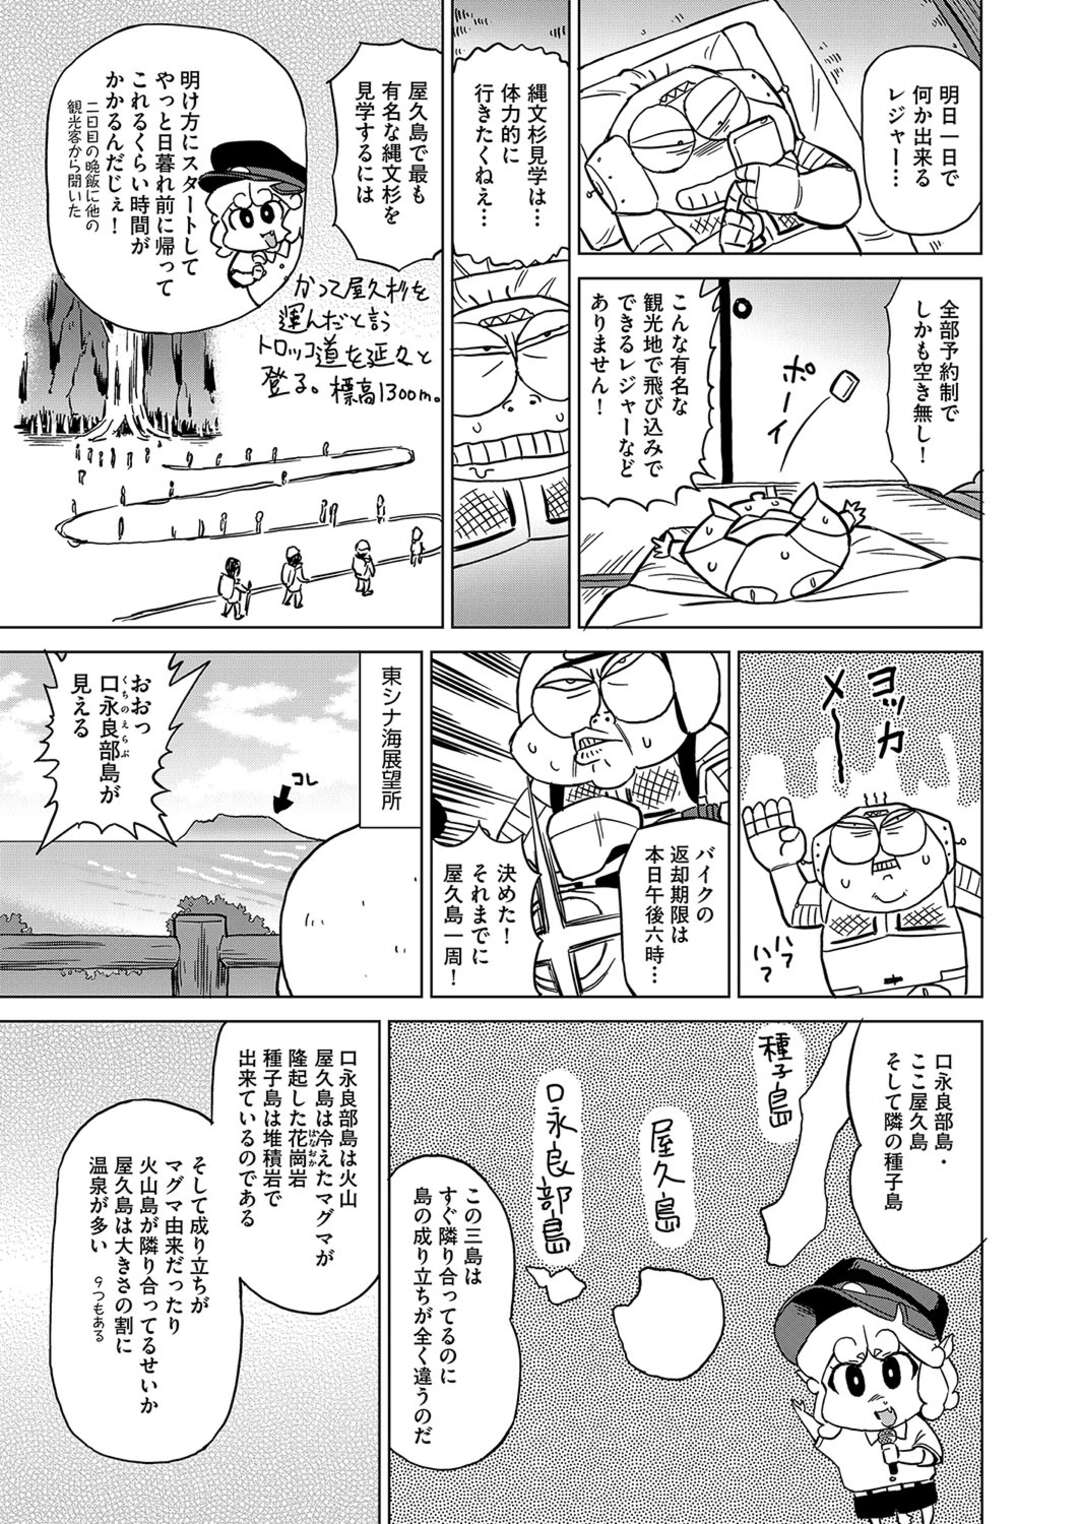 【エロ漫画】【冬みかん:COMIC 阿吽】屋久島出身だからとこだまモデル描かれていたばーるん先生が復島。